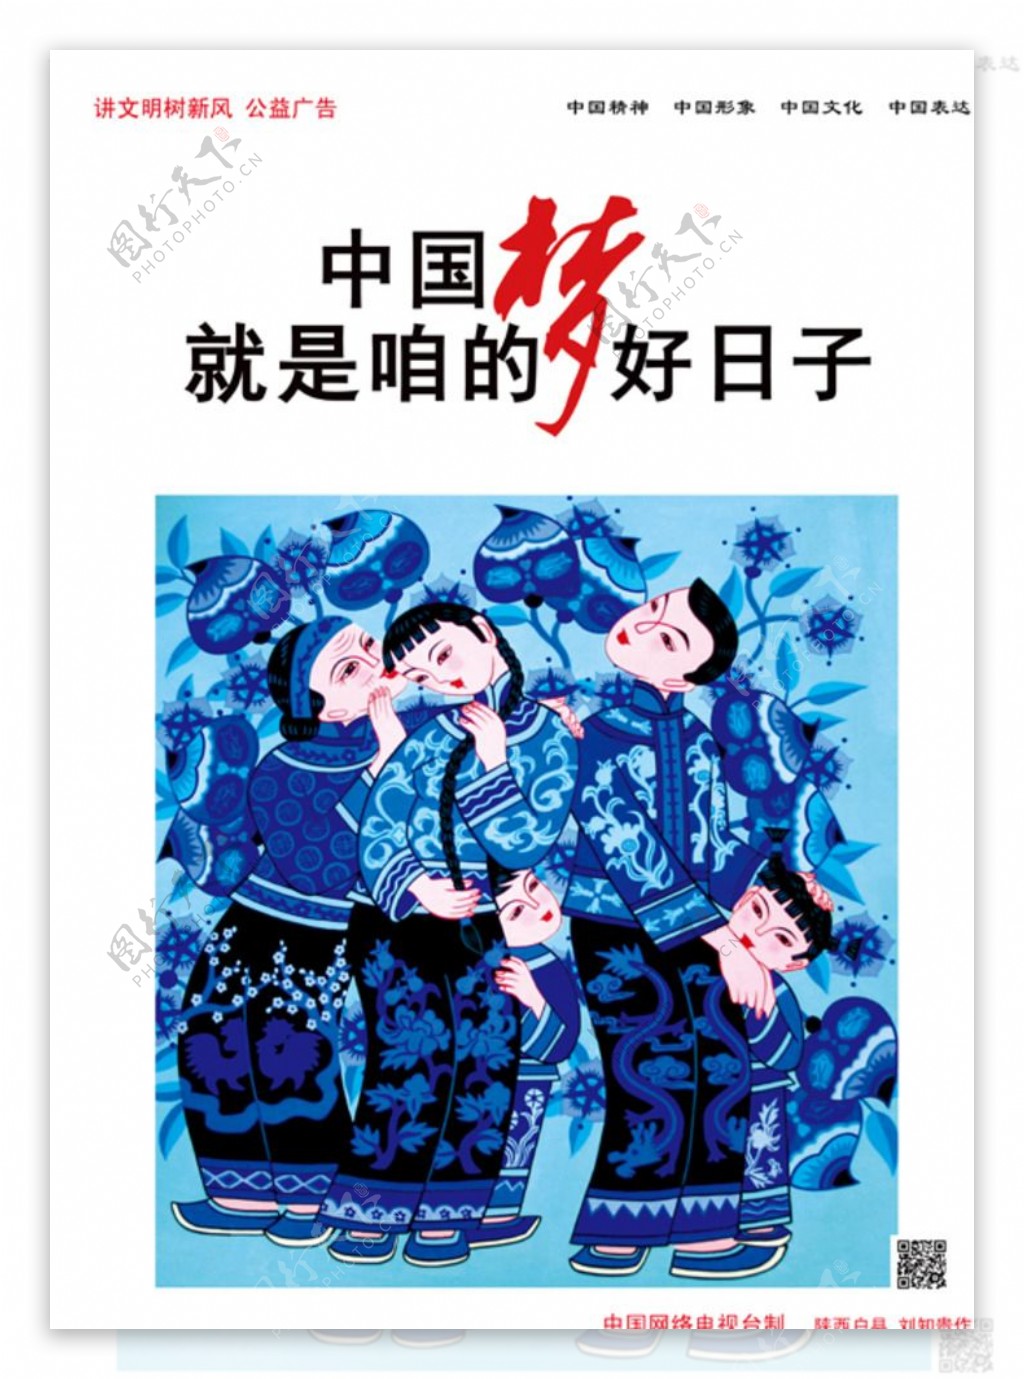 中国梦新农村海报图片